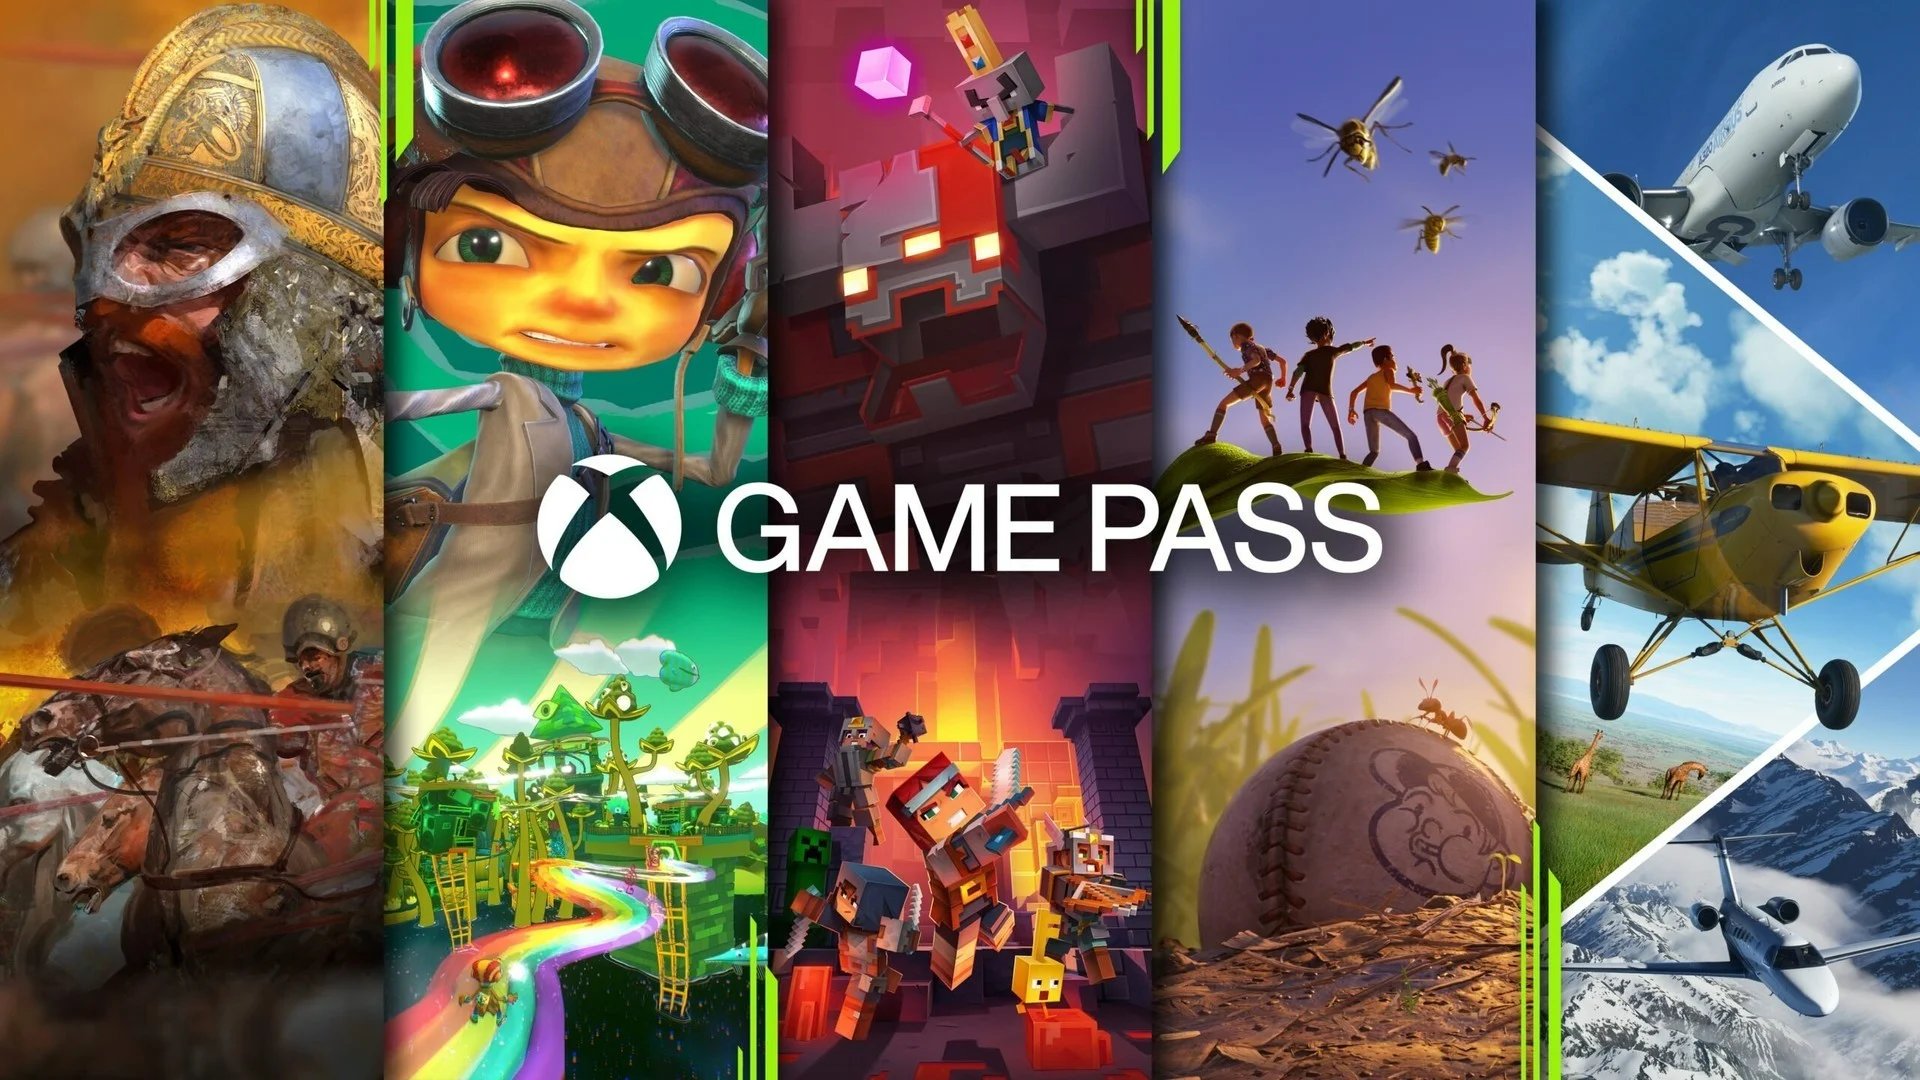 Xbox Live Gold e Game Pass têm aumento de preço no Brasil